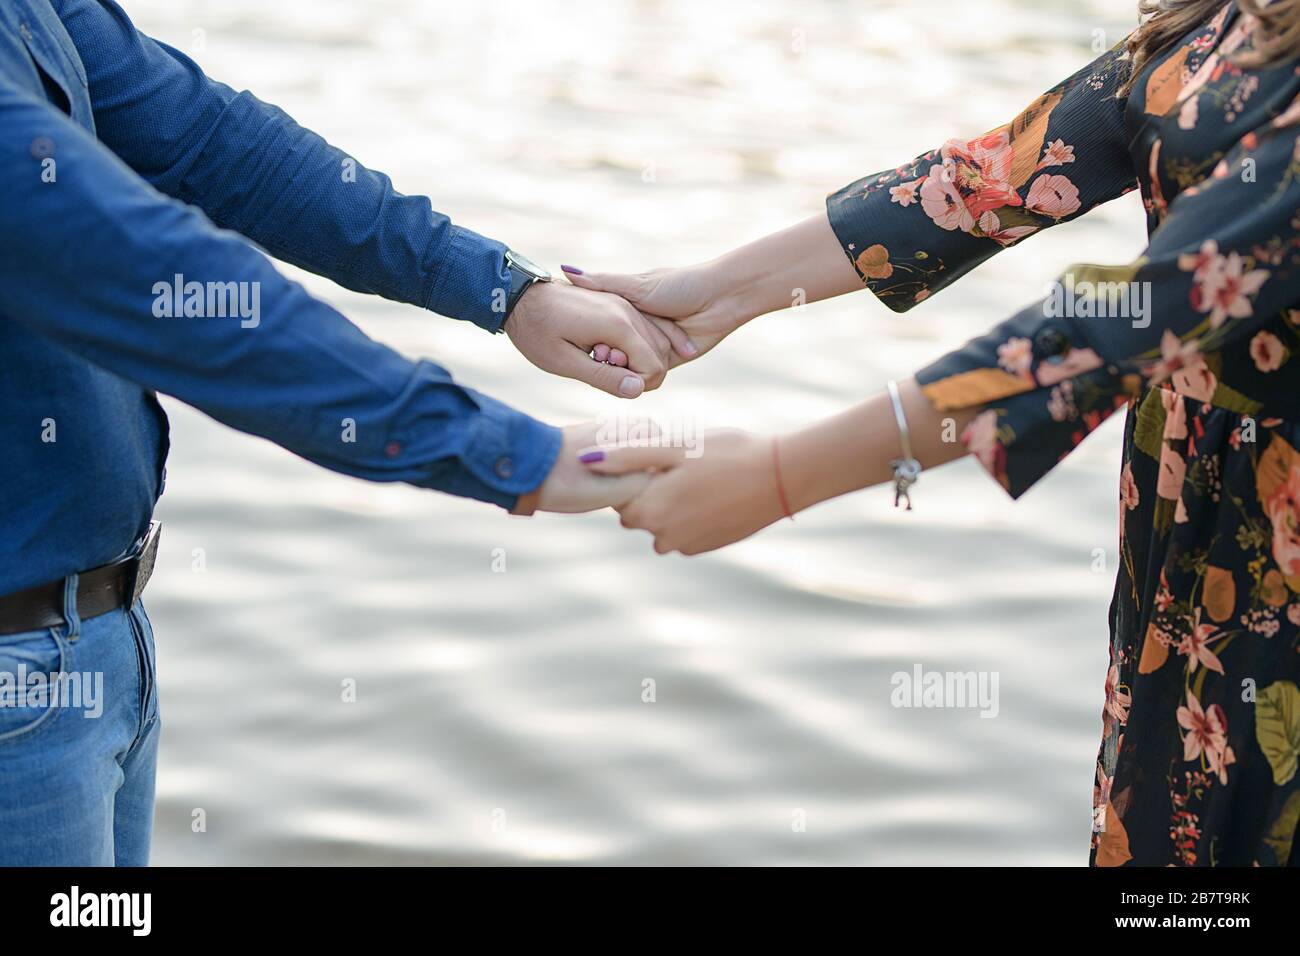 Heterosexuell kaukasisches Paar, das spielerisch die Hände vor einem unscharfen, unscharfen Wasserhintergrund hält, einem See oder einem Meer, Konzept für ein verliebtes Paar Stockfoto